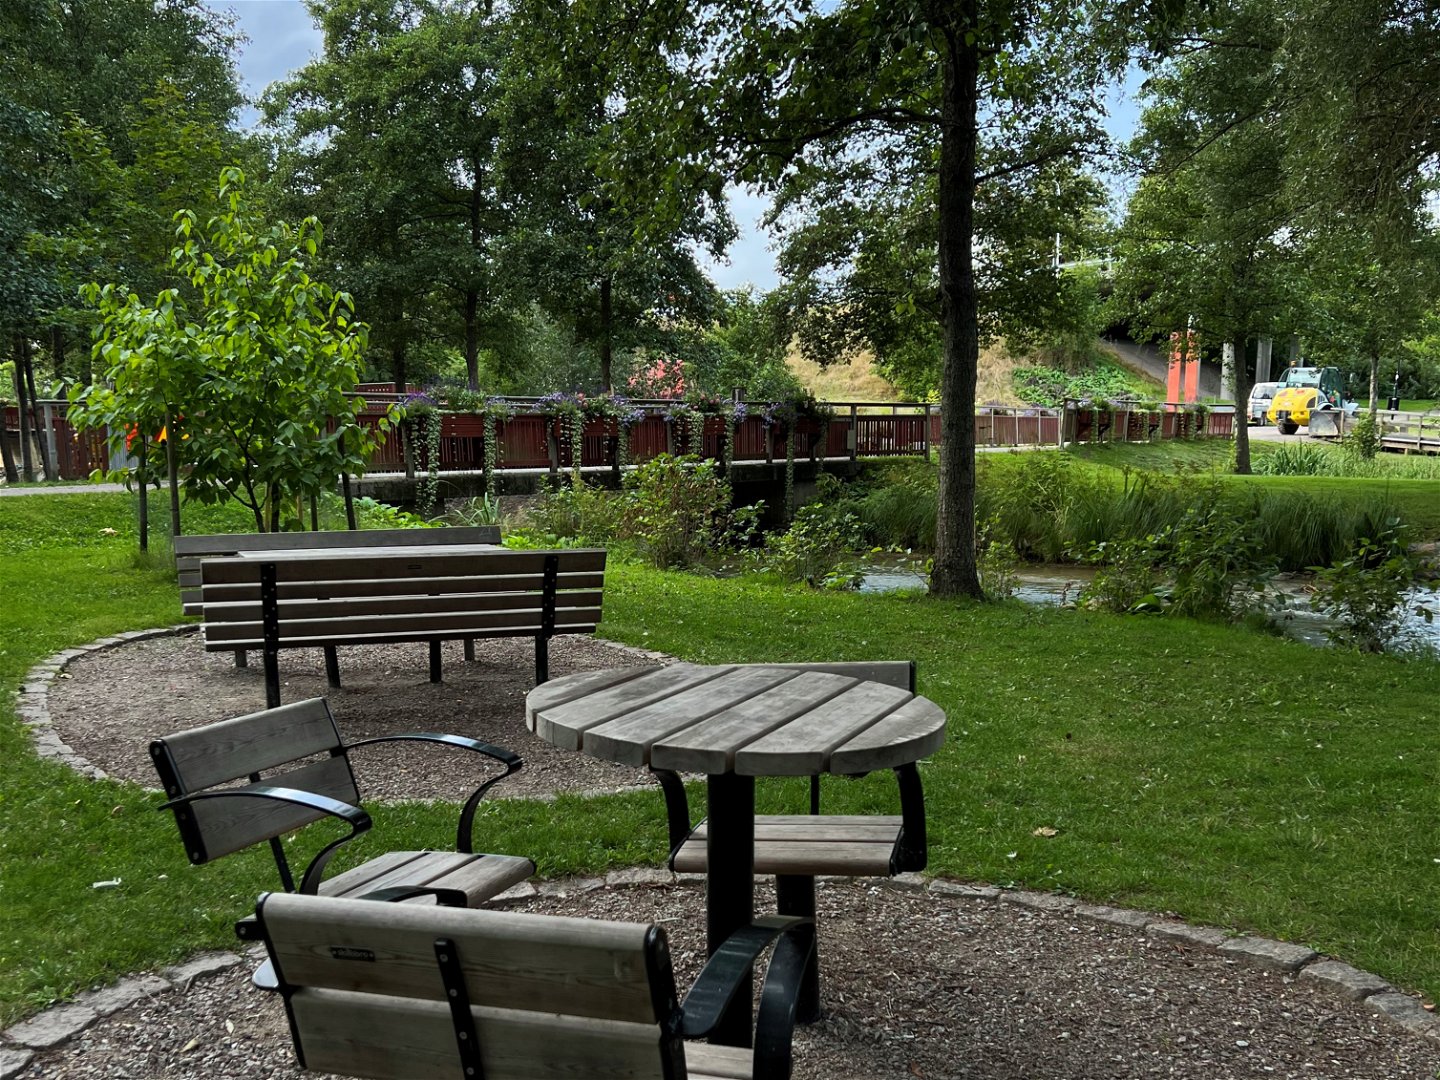 Bord och stolar i trä i en park, intill ett vattendrag